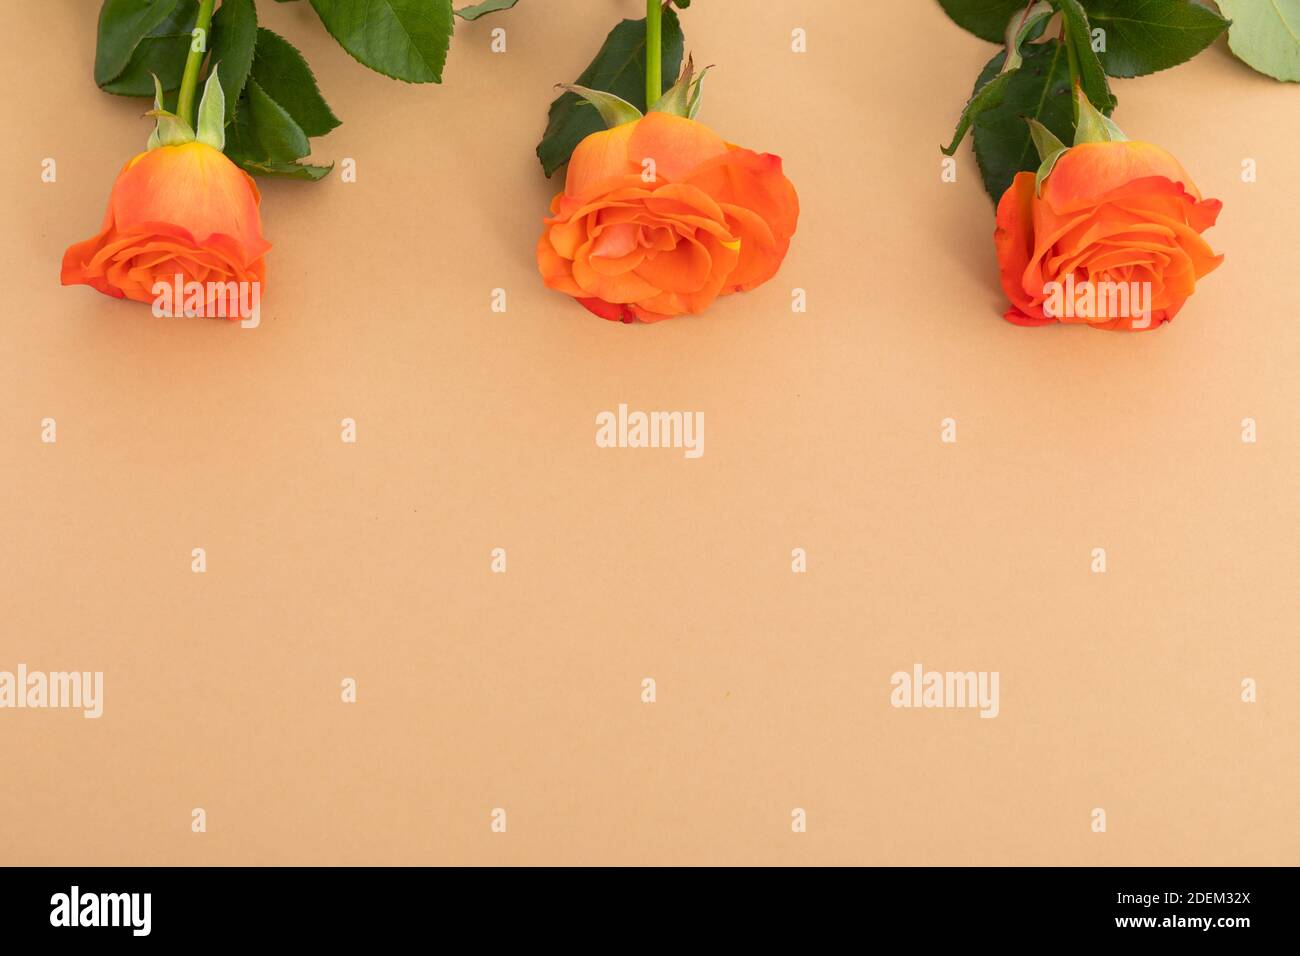 Three orange roses lying separately from top on orange background Stock Photo